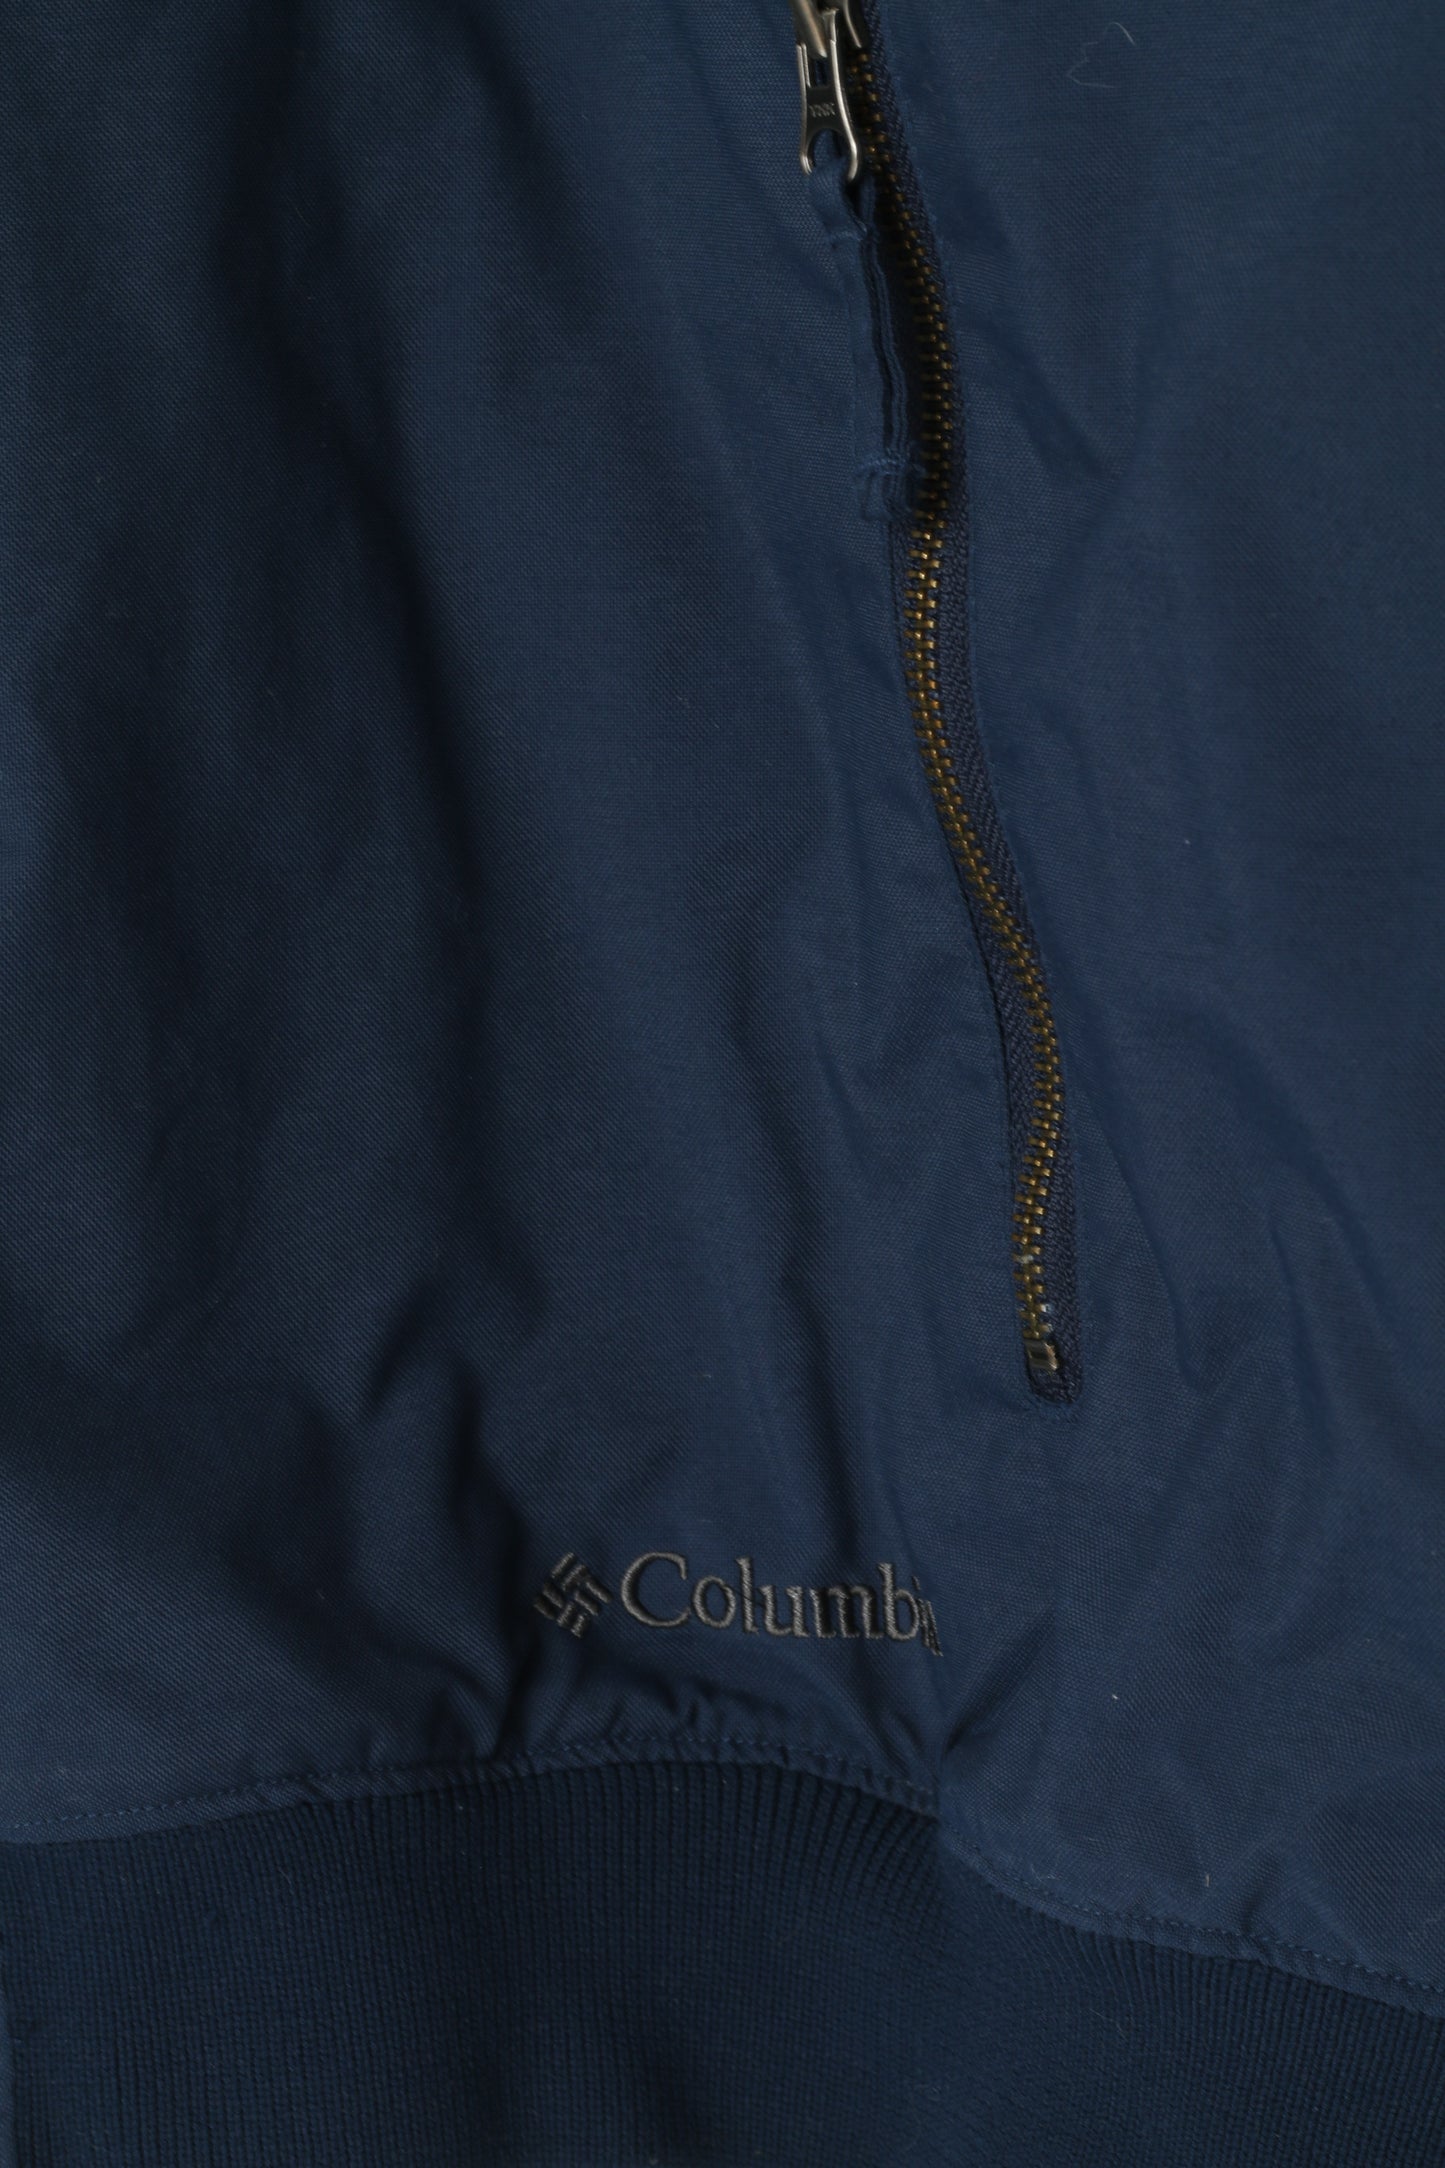 Columbia Sportswear Giubbotto bomber XXL da uomo in nylon blu scuro con fodera in pile impermeabile